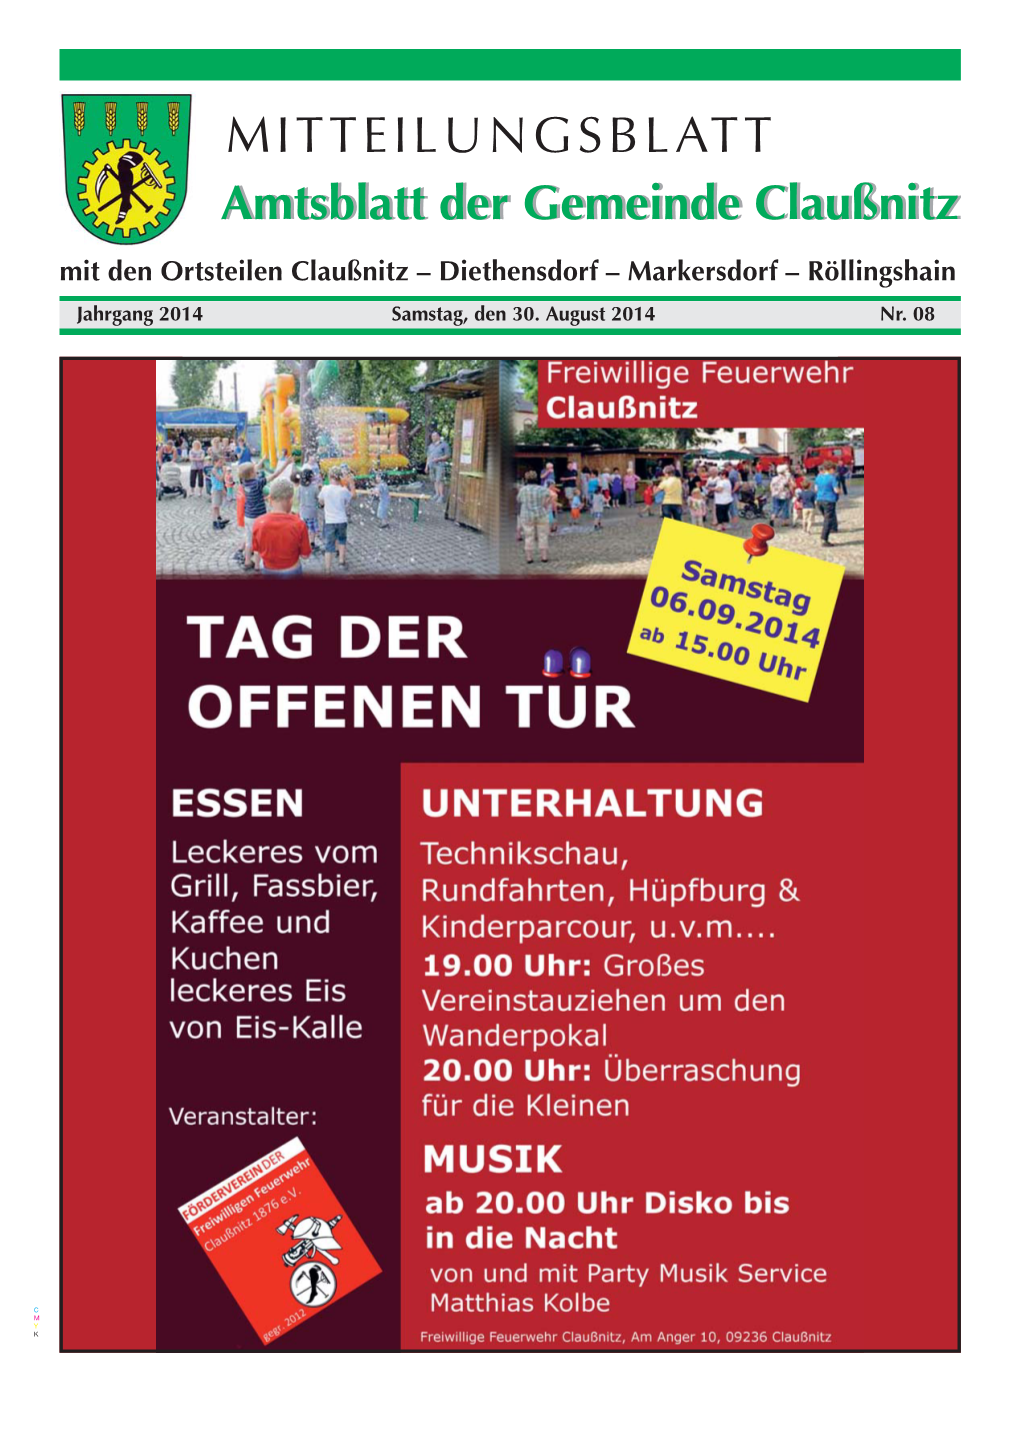 MITTEILUNGSBLATT Amtsblattamtsblatt Derder Gemeindegemeinde Claußnitzclaußnitz